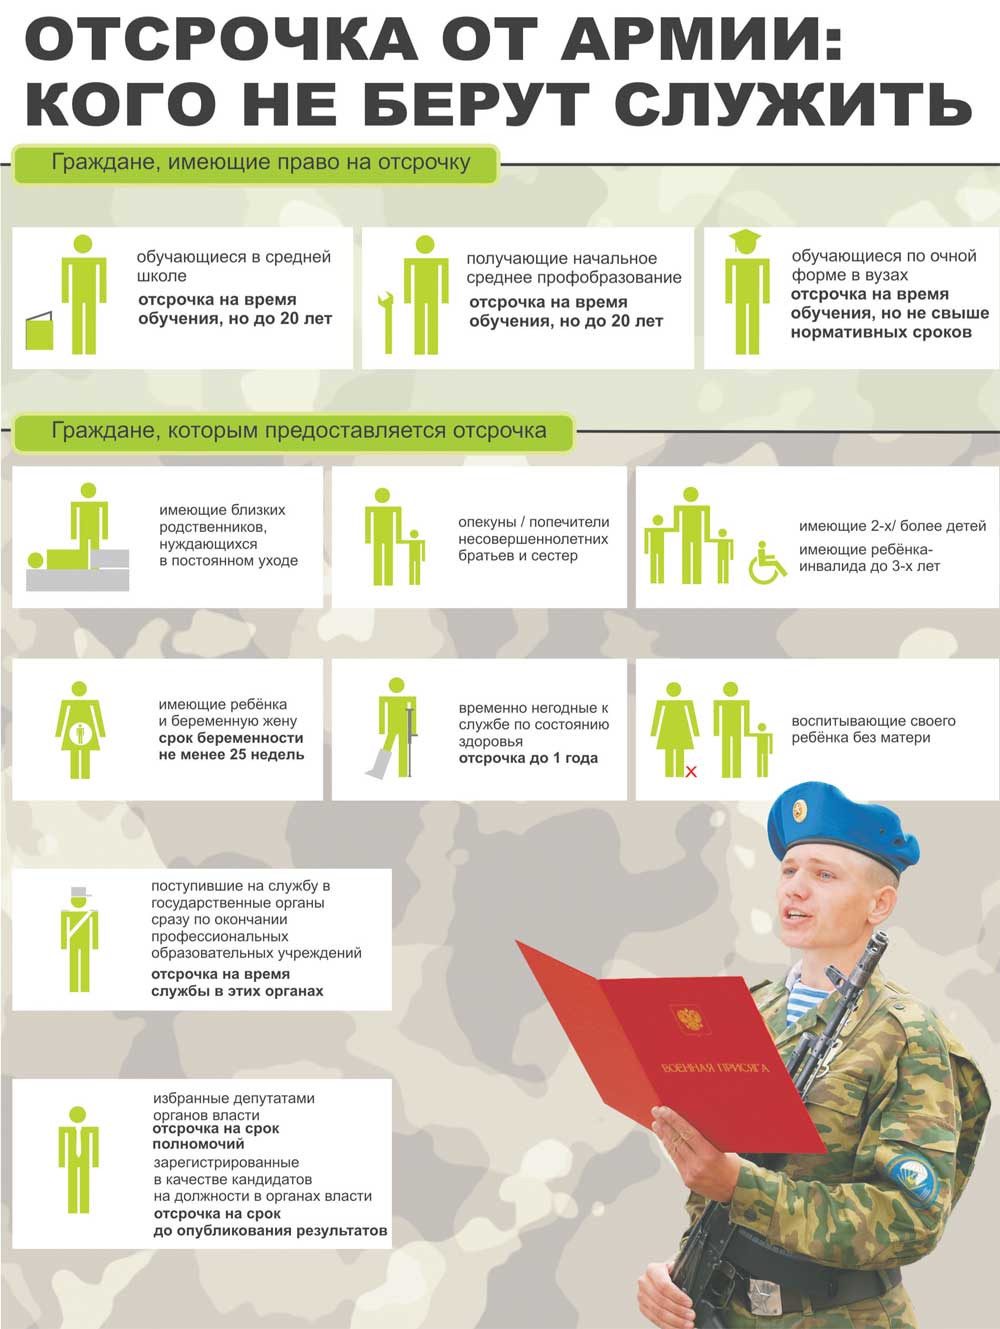 Армия после ВУЗа: условия отсрочки, плюсы и минусы